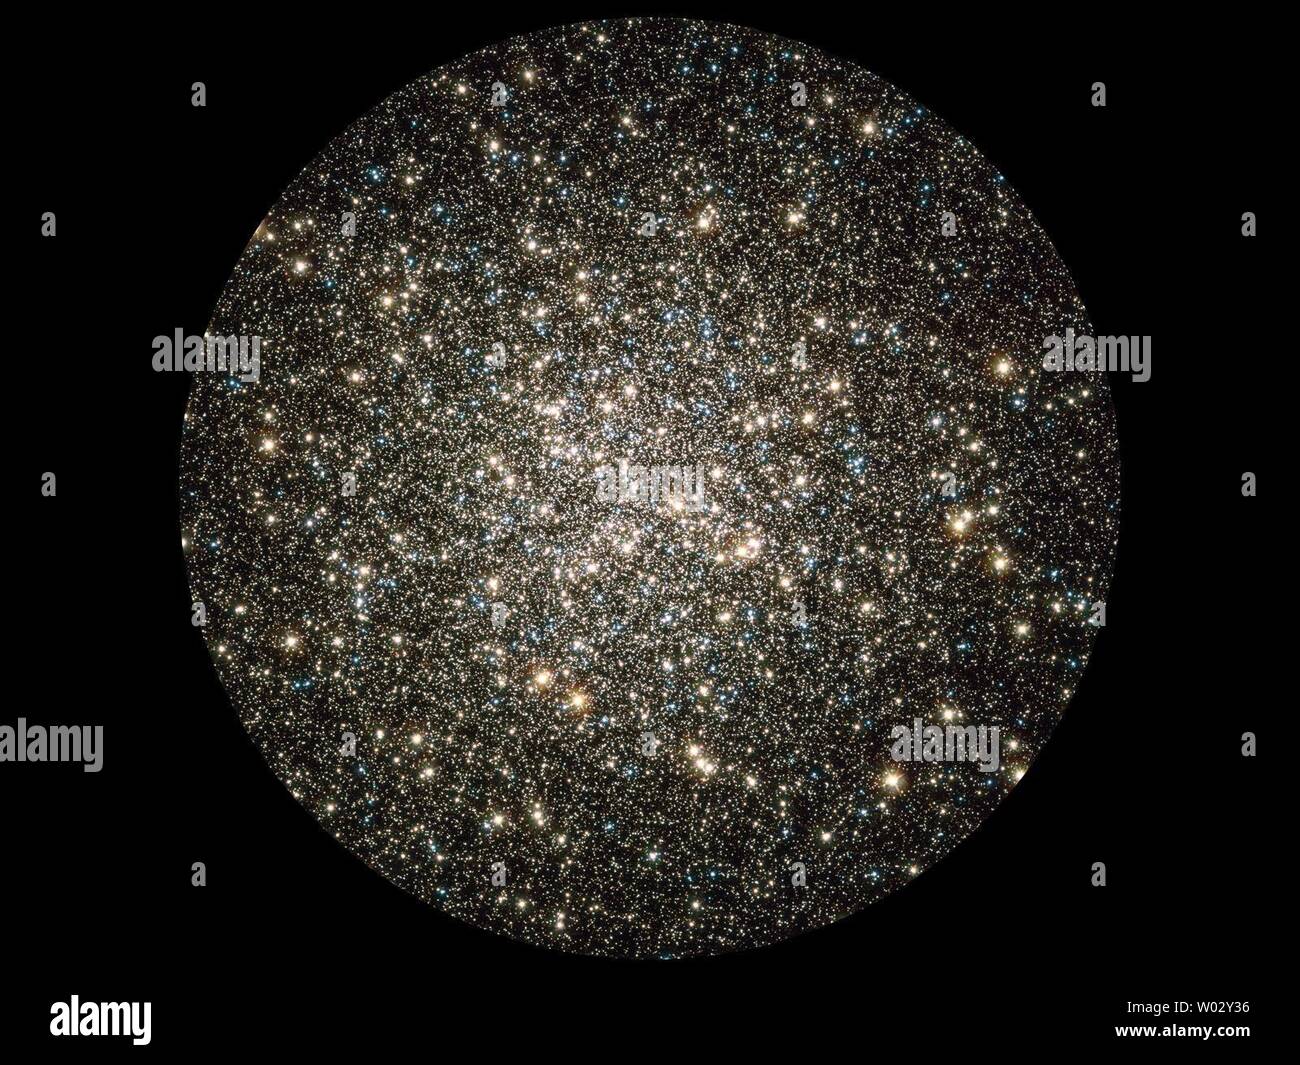 Un compuesto de archivado de datos del Telescopio Hubble tomadas con la cámara planetaria gran angular 2 y la Cámara Avanzada para estudios proporciona una visión de muchos cientos de miles de estrellas en movimiento en el cúmulo globular M13, uno de los mejores y más brillantes conocidos cúmulos globulares en el cielo del norte. M13 es el hogar de más de 100.000 estrellas y ubicado a una distancia de 25.000 años luz. UPI/NASA Foto de stock